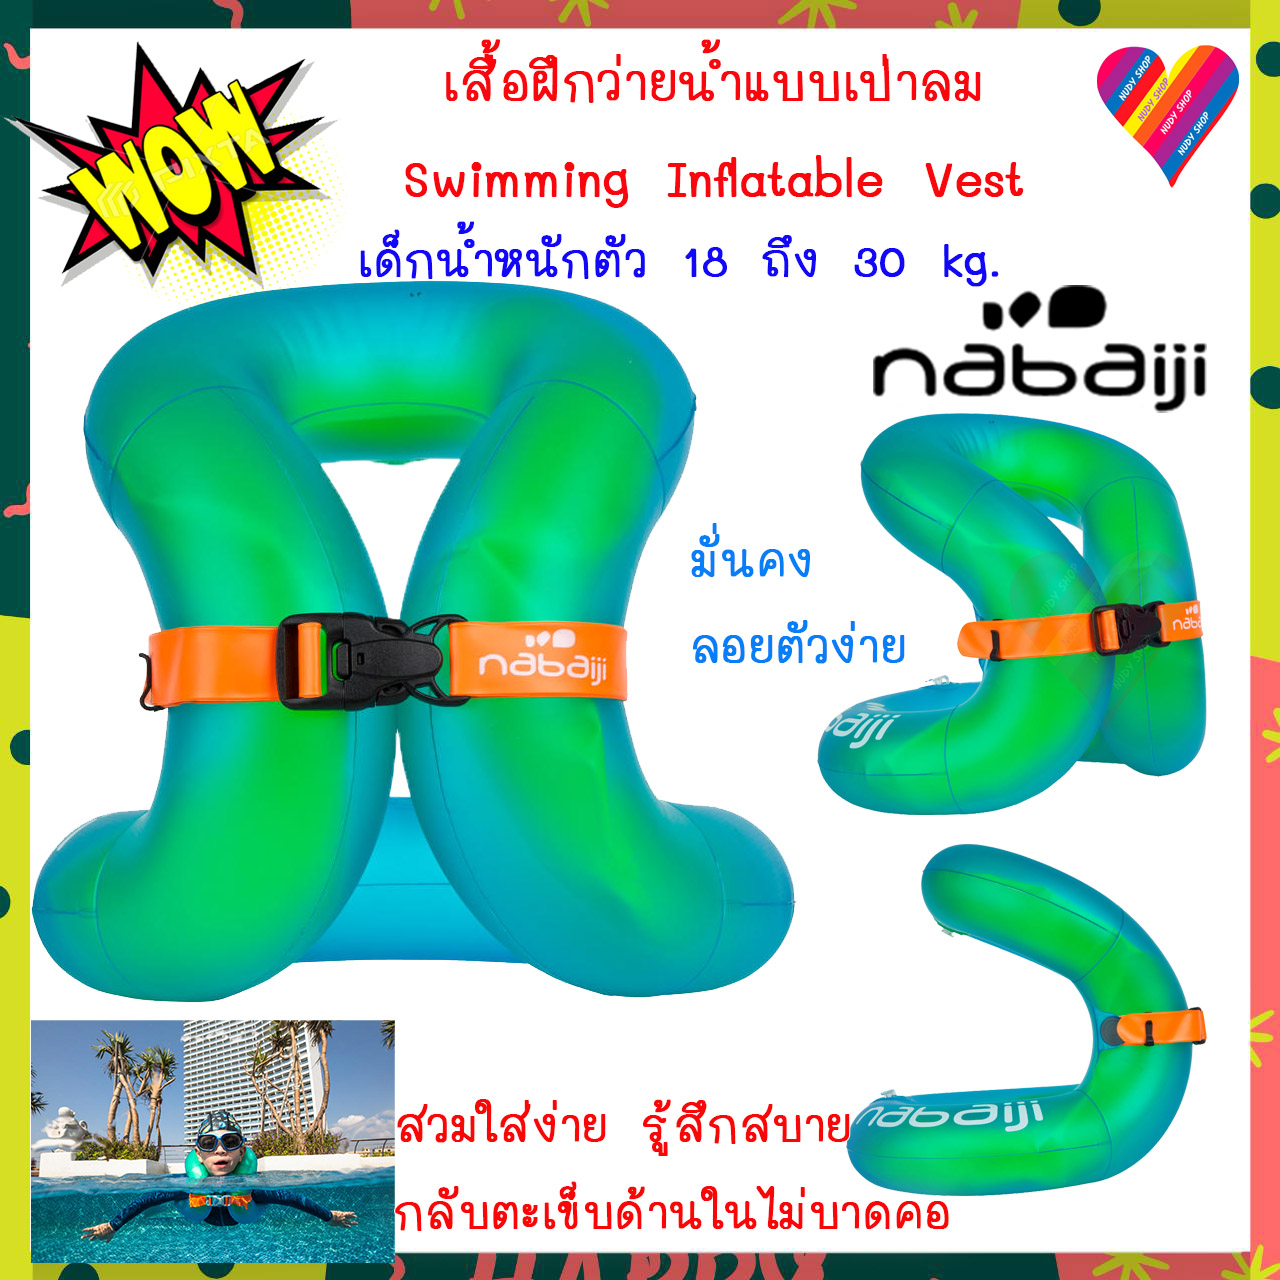 เสื้อฝึกว่ายน้ำ nabaiji ห่วงยาง คล้องคอเป่าลม อายุ 3-6 ปี หนัก 18-30 กก.(สีเขียว) ห่วงยางเด็ก ห่วงยางว่ายน้ำ เสื้อชูชีพ เสื้อชูชีพเด็ก